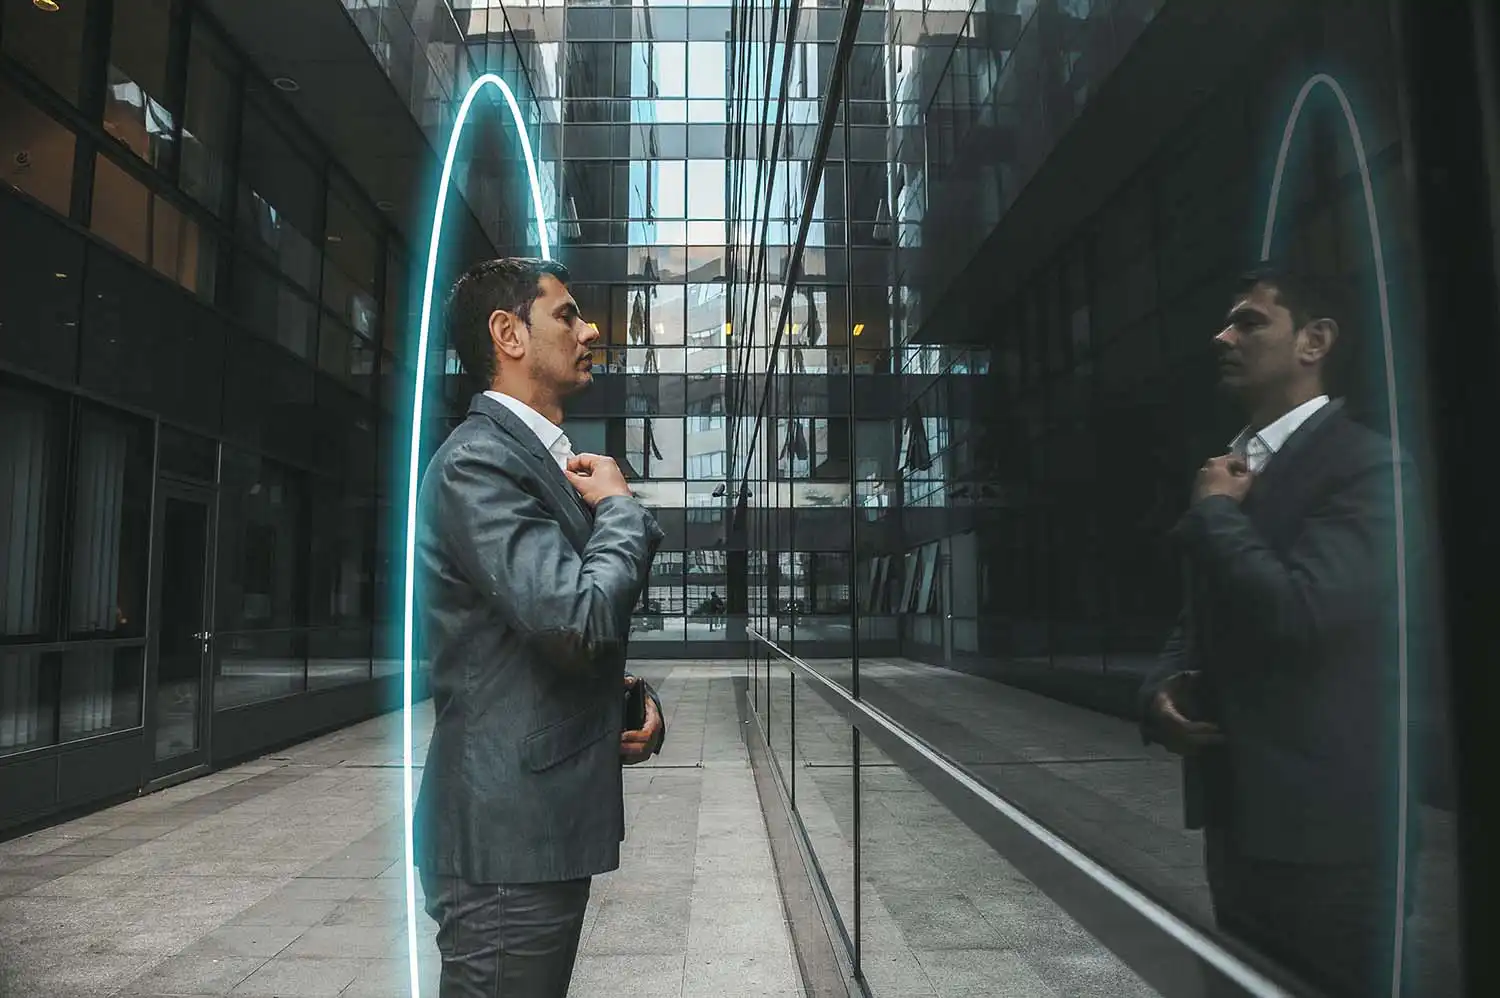 Man kijkt in weerspiegeling van gebouw en denkt na over het verkoopproces van zijn bedrijf